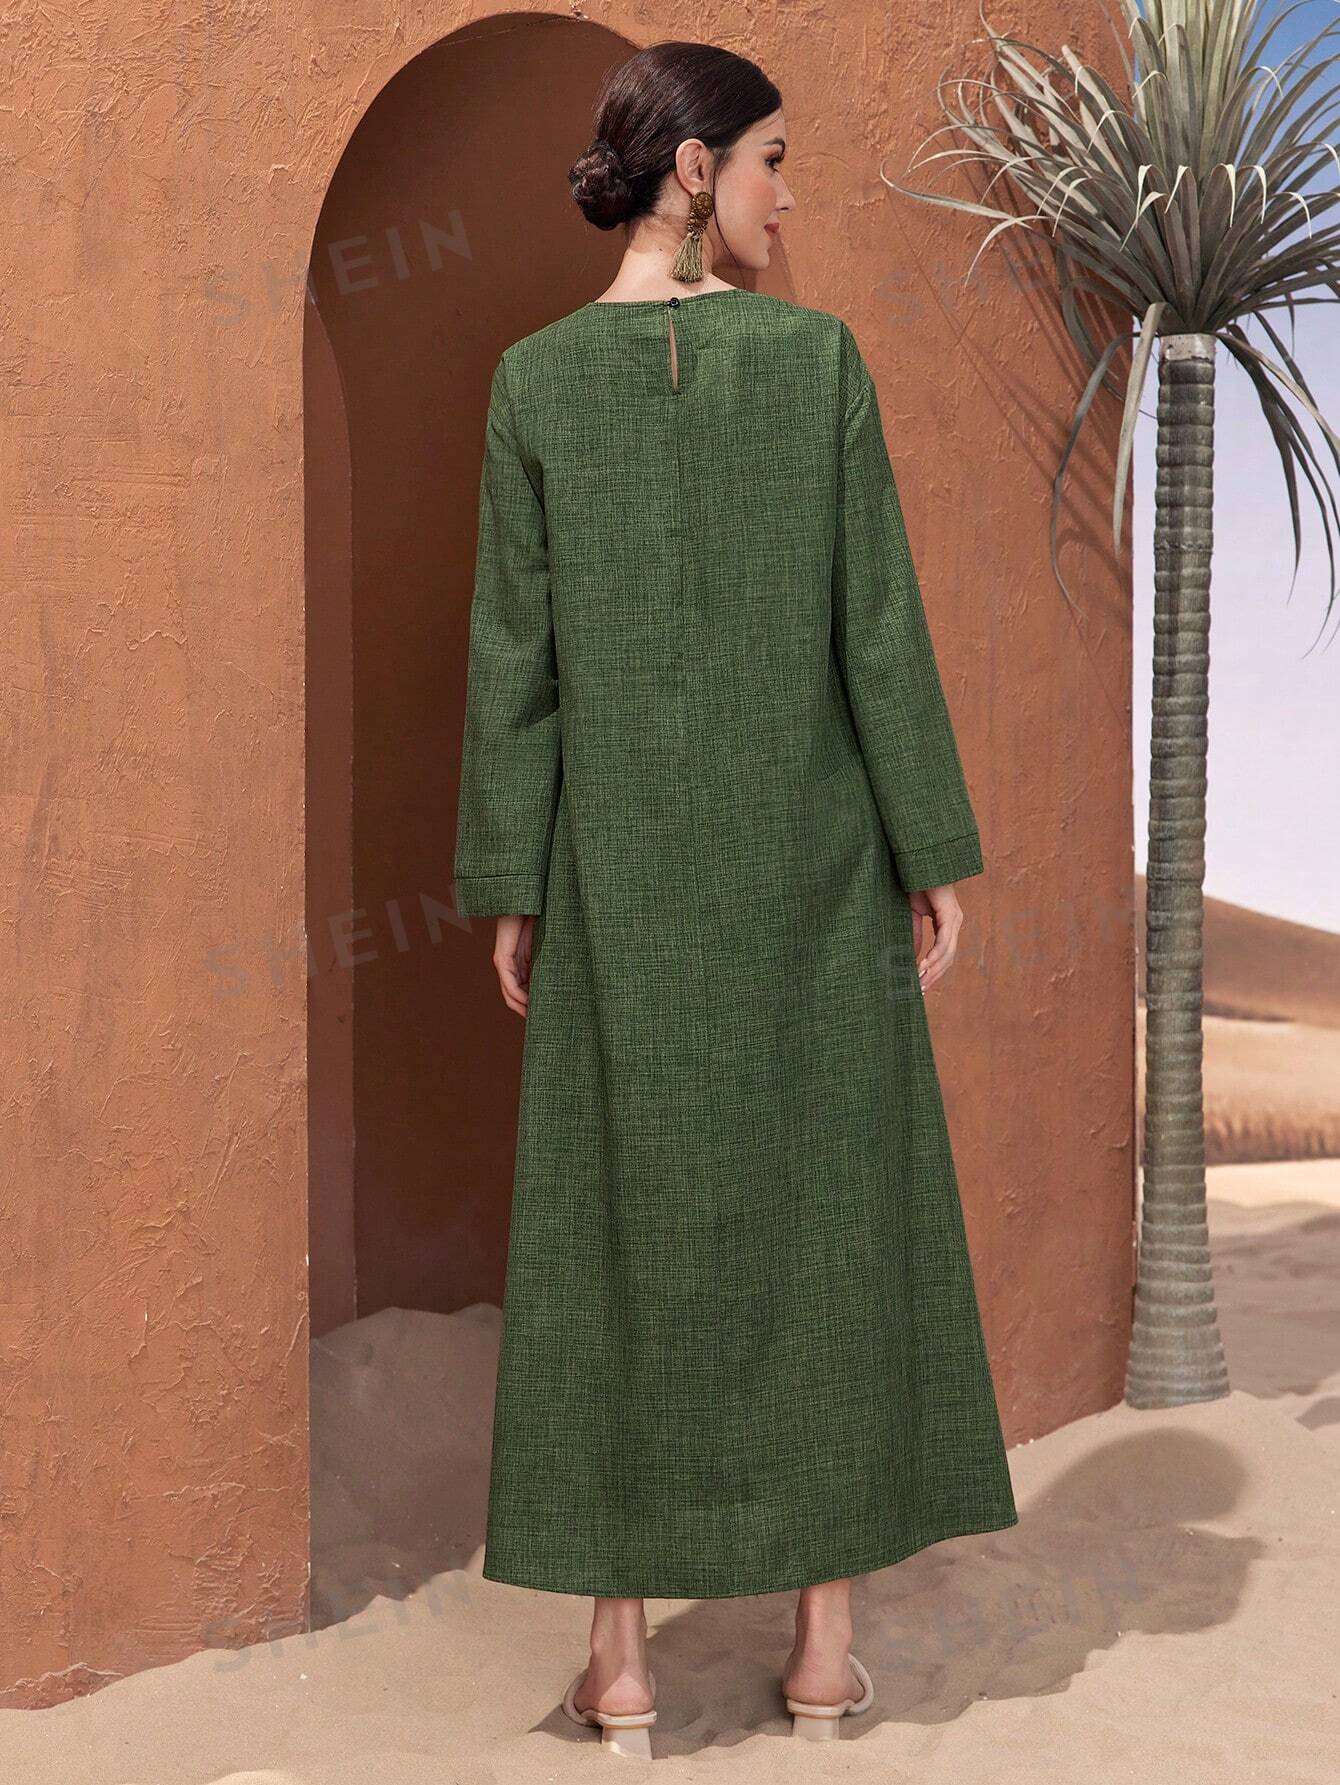 женское платье среднего востока мусульманское платье с капюшоном и бриллиантами платье в арабском стиле юго восточная азия весенняя мод SHEIN Najma Женское льняное платье в арабском стиле с рукавами-колокольчиками, темно-зеленый